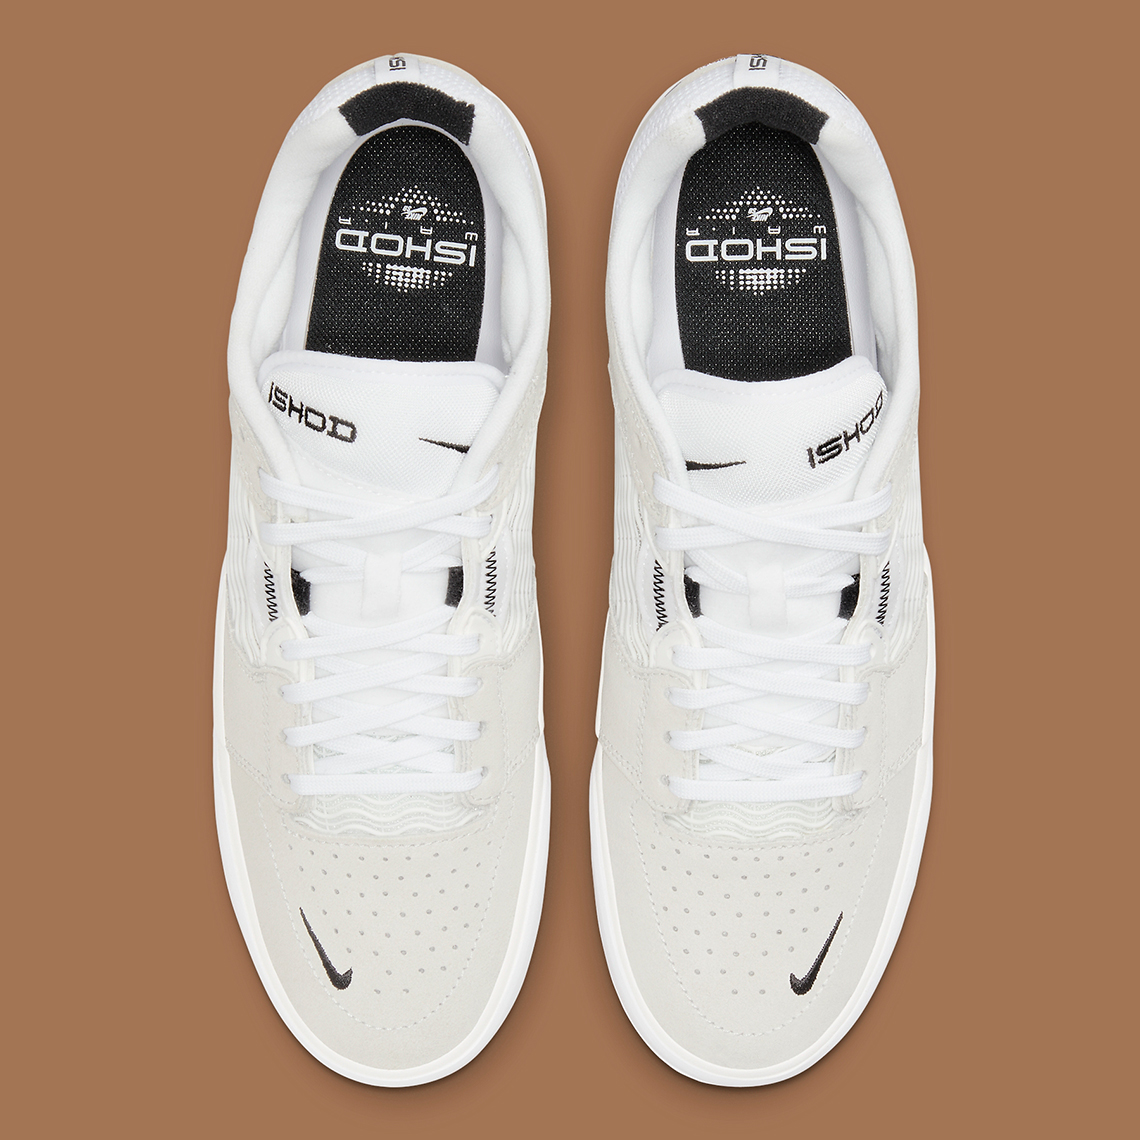 Nike SB Ishod Wair White Gum DC7232-101 | SneakerNews.com